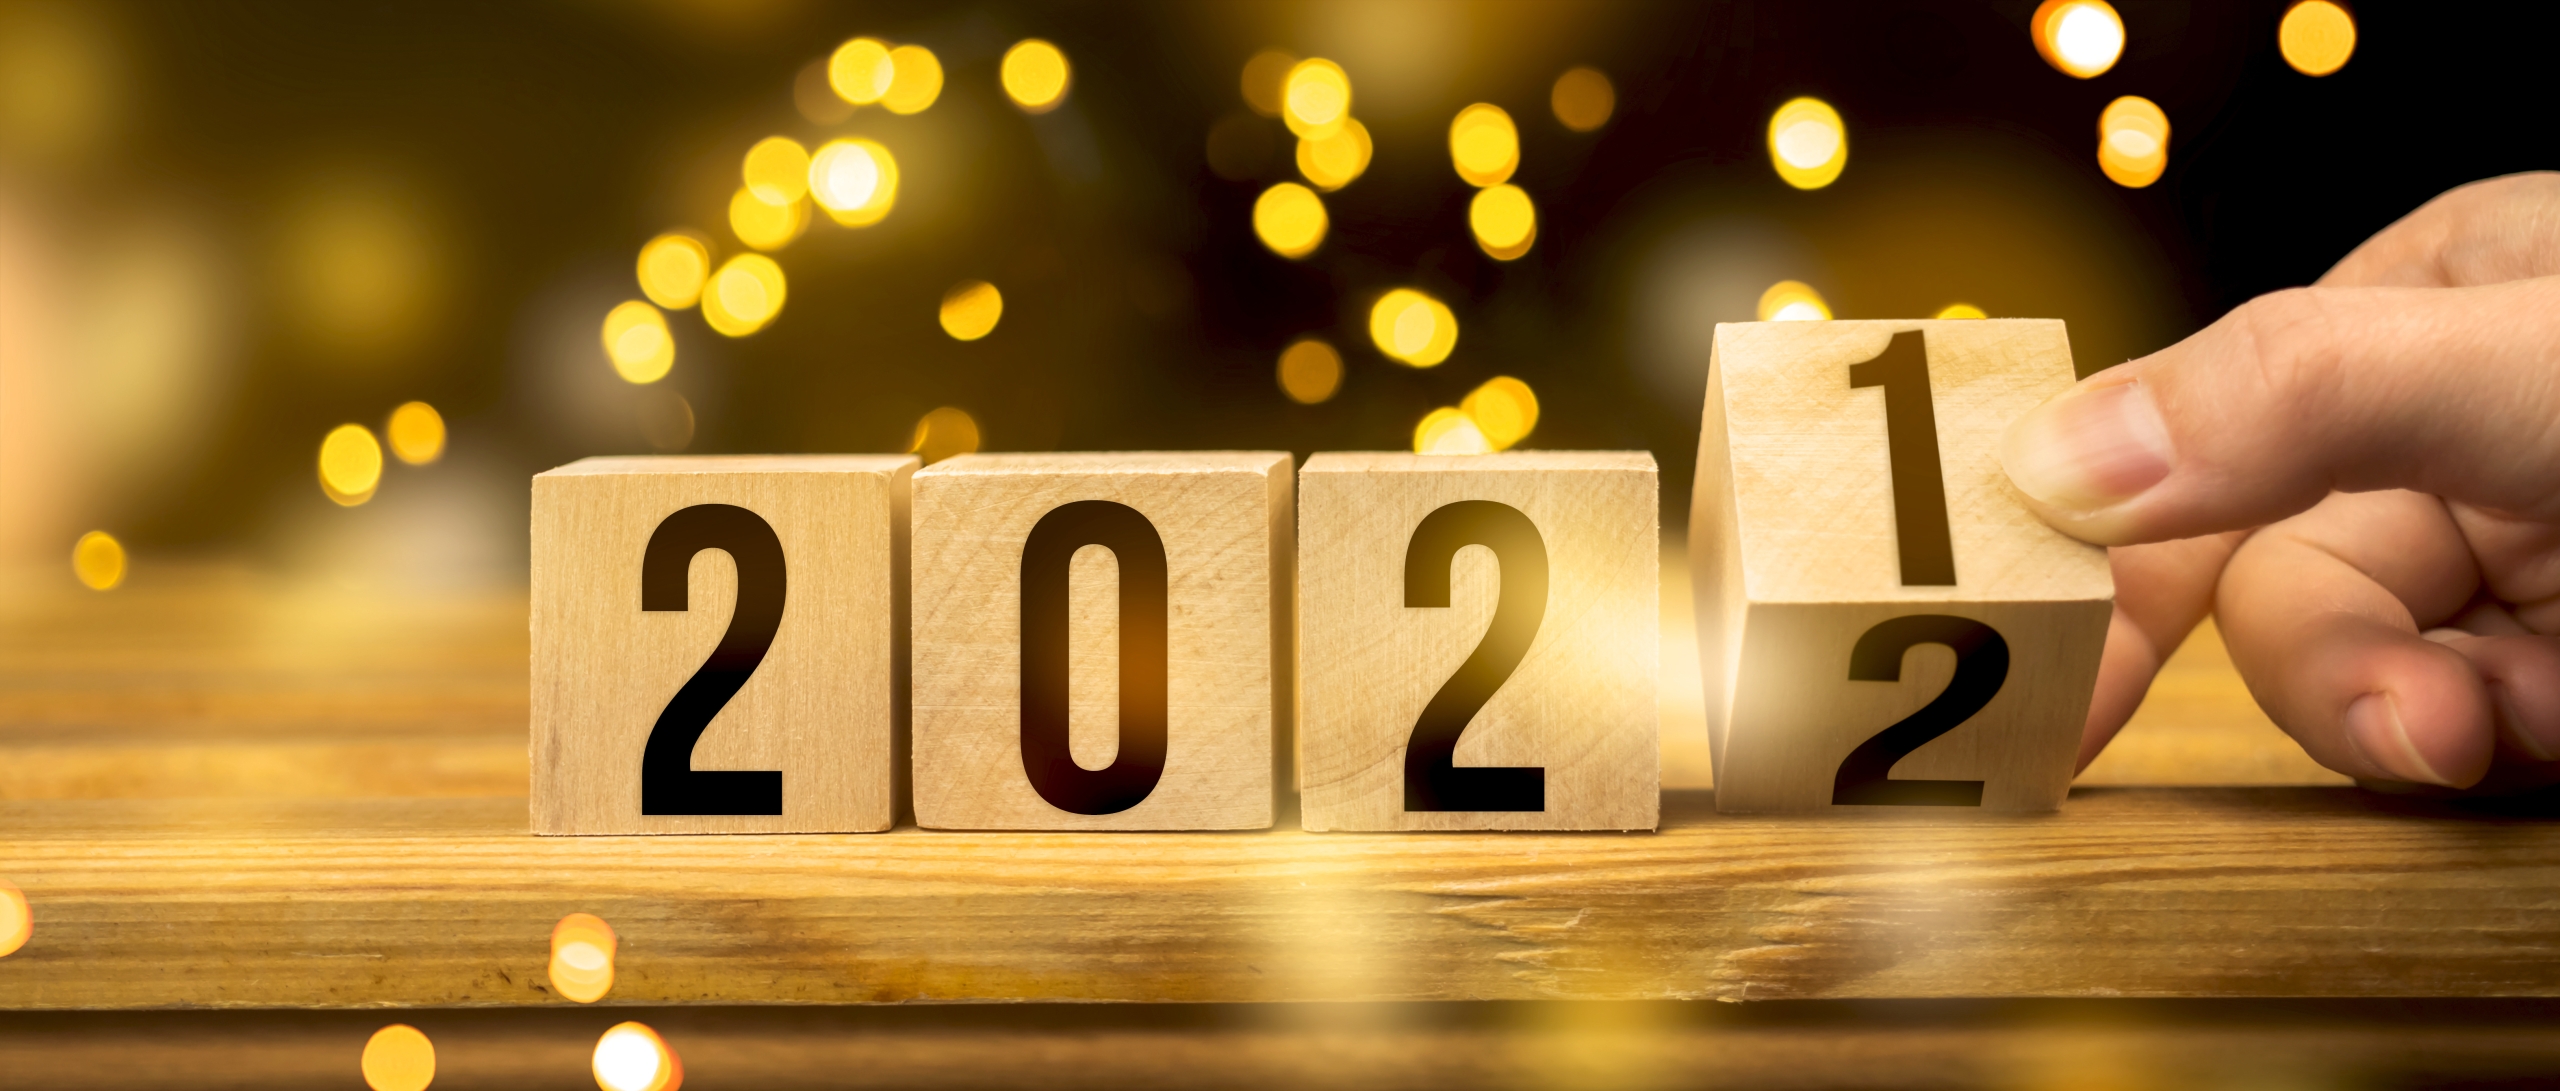 Dal 2021 al 2022, Happy New Year concept. Mano che cambia il numero dell'anno girando un blocco di legno, con lucine di sottofondo